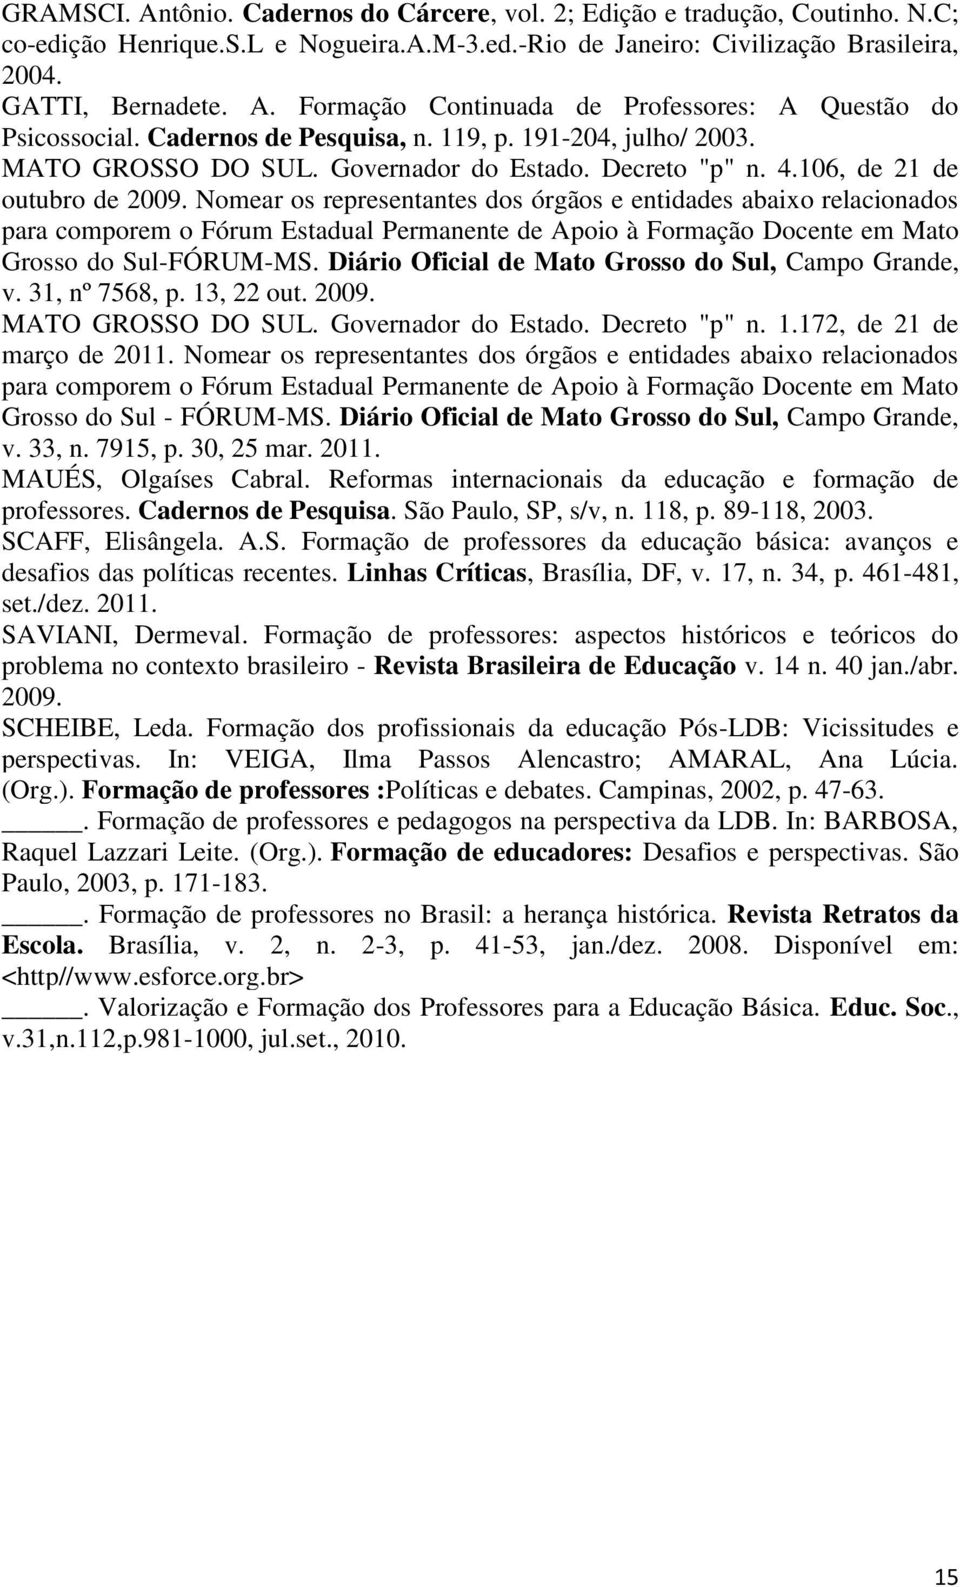 Nomear os representantes dos órgãos e entidades abaixo relacionados para comporem o Fórum Estadual Permanente de Apoio à Formação Docente em Mato Grosso do Sul-FÓRUM-MS.